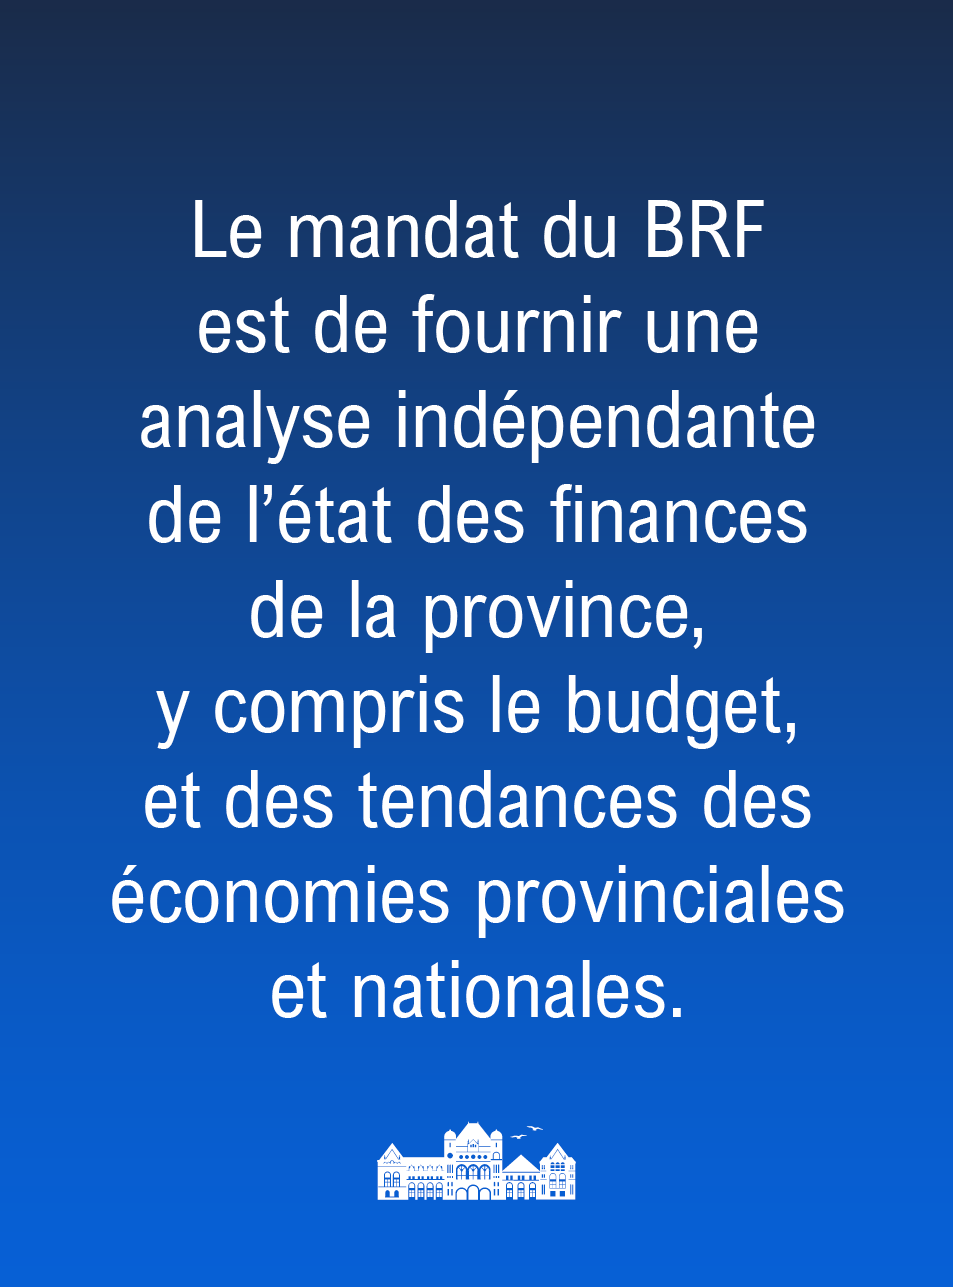 Le mandat du directeur de la responsabilité financière est de fournir une analyse indépendante de l’état des finances de la province, y compris du budget, ainsi que des tendances des économies provinciales et nationales.